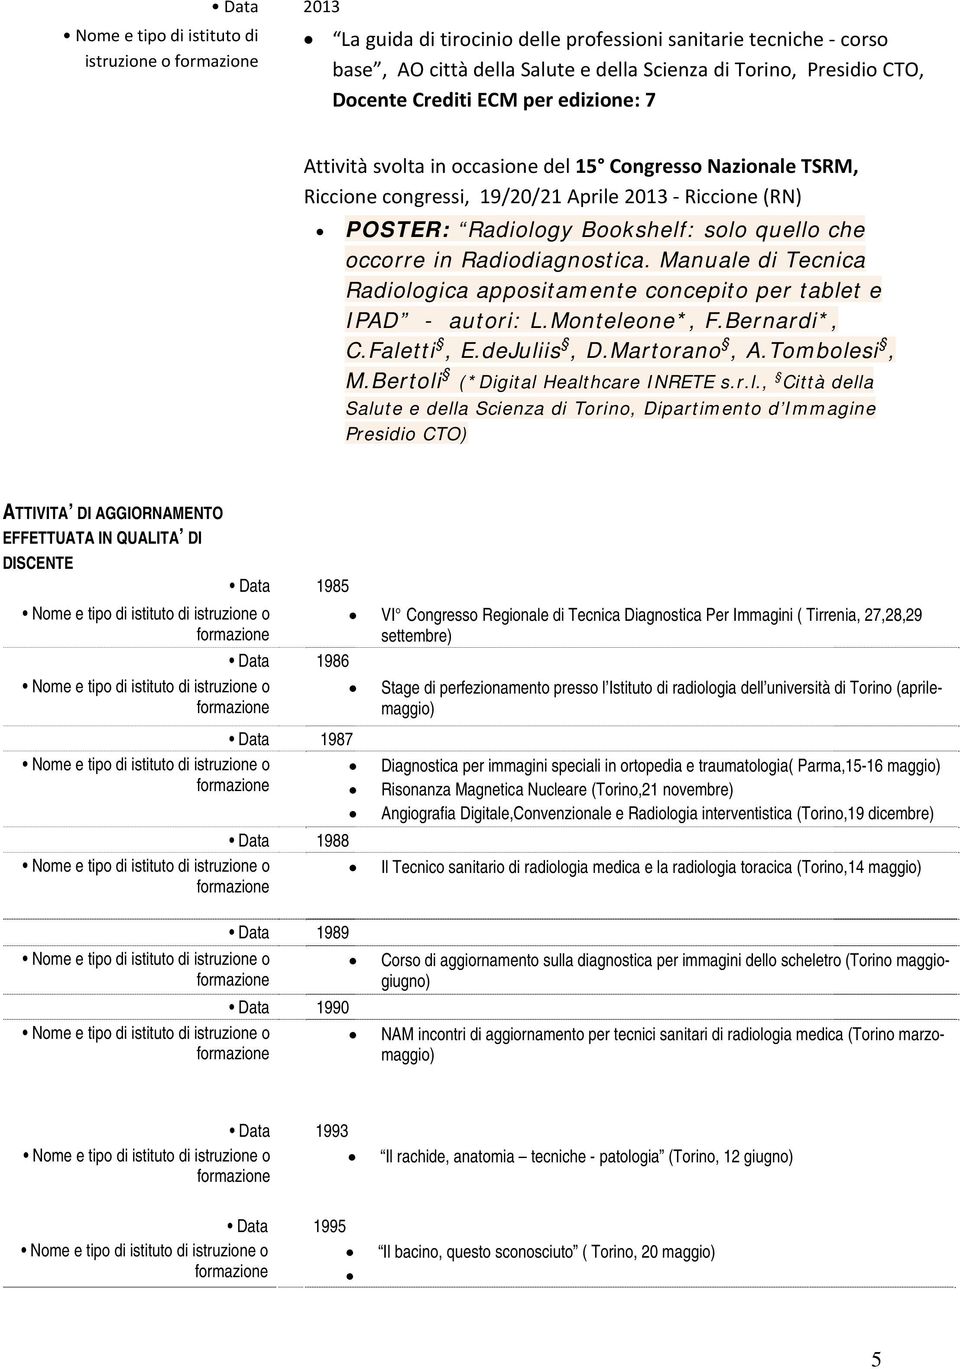 Manuale di Tecnica Radiologica appositamente concepito per tablet e IPAD - autori: L.Monteleone*, F.Bernardi*, C.Faletti, E.deJuliis, D.Martorano, A.Tombolesi, M.Bertoli (*Digital Healthcare INRETE s.